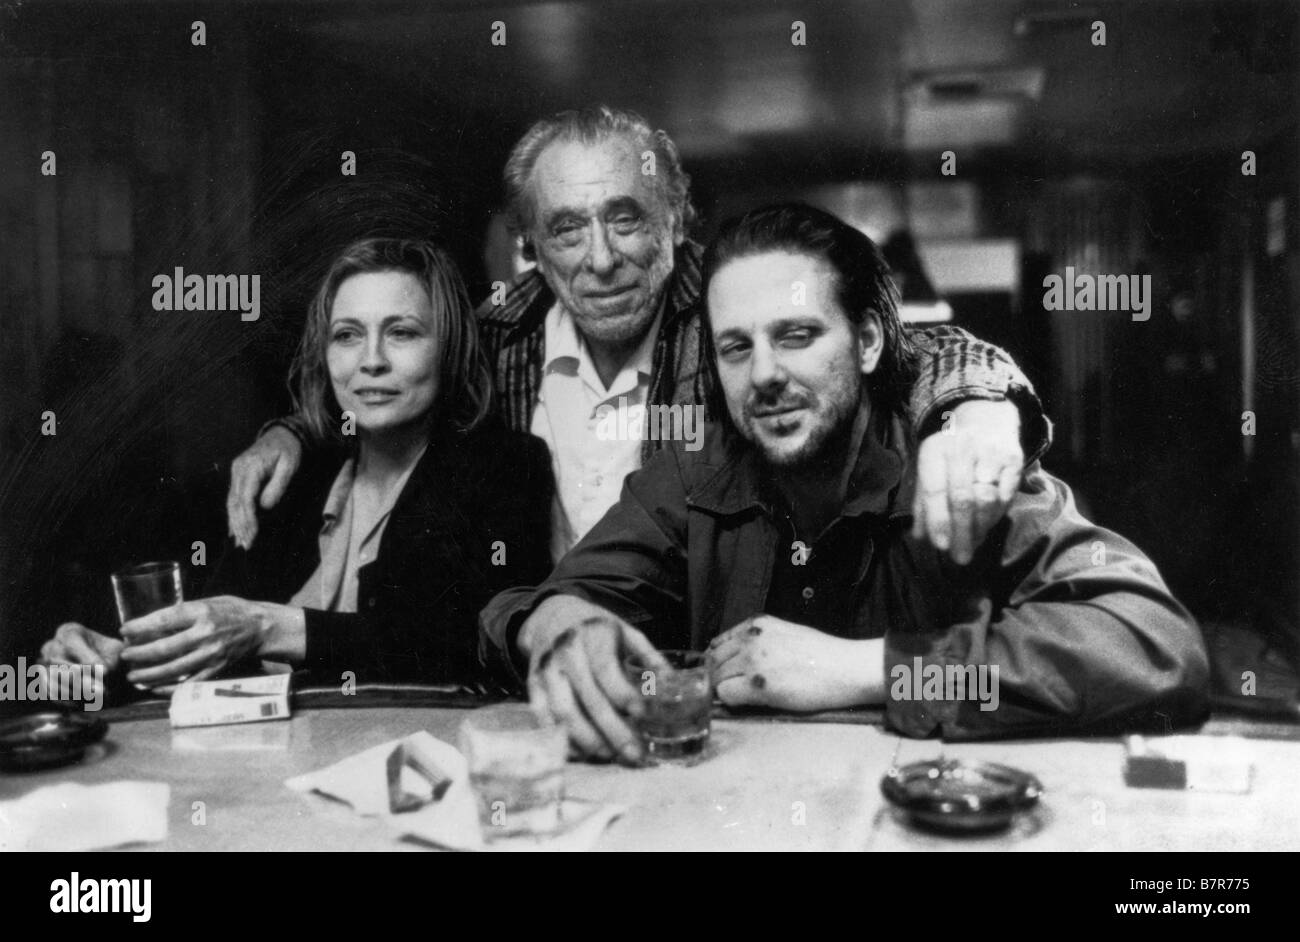 Barfly Anno: 1987 USA Faye Dunaway , Charles Bukowski (scenario), Mickey Rourke Direttore: Barbet Schroeder immagine di scatto Foto Stock